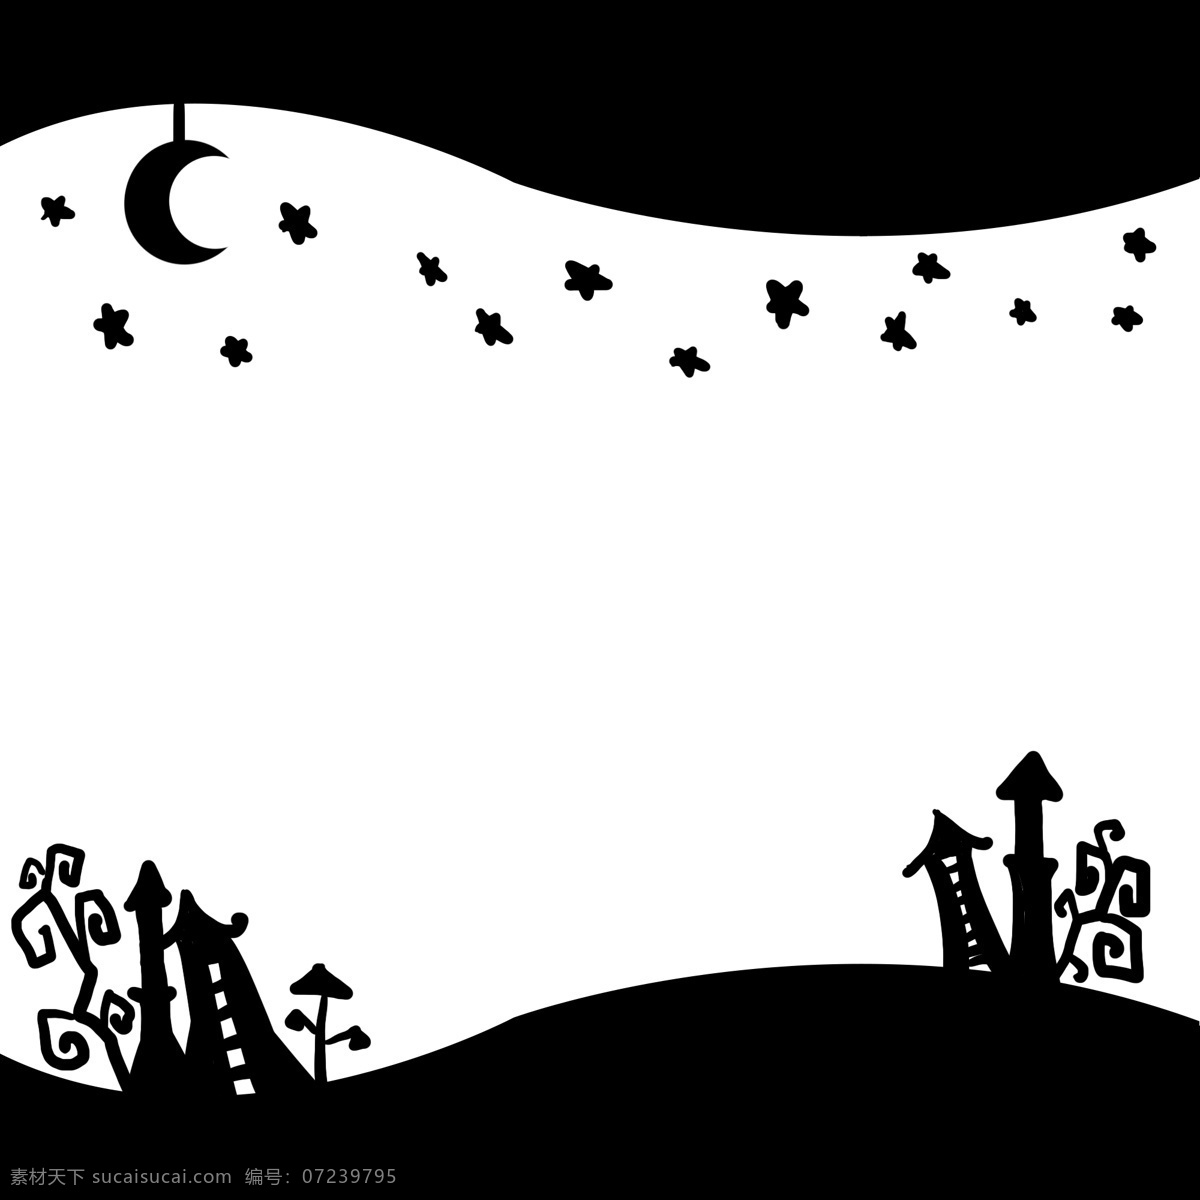 万圣节 主题 黑白 边框 手绘 插画 万圣节主题 星星月亮 黑白城堡 背景 圣诞节